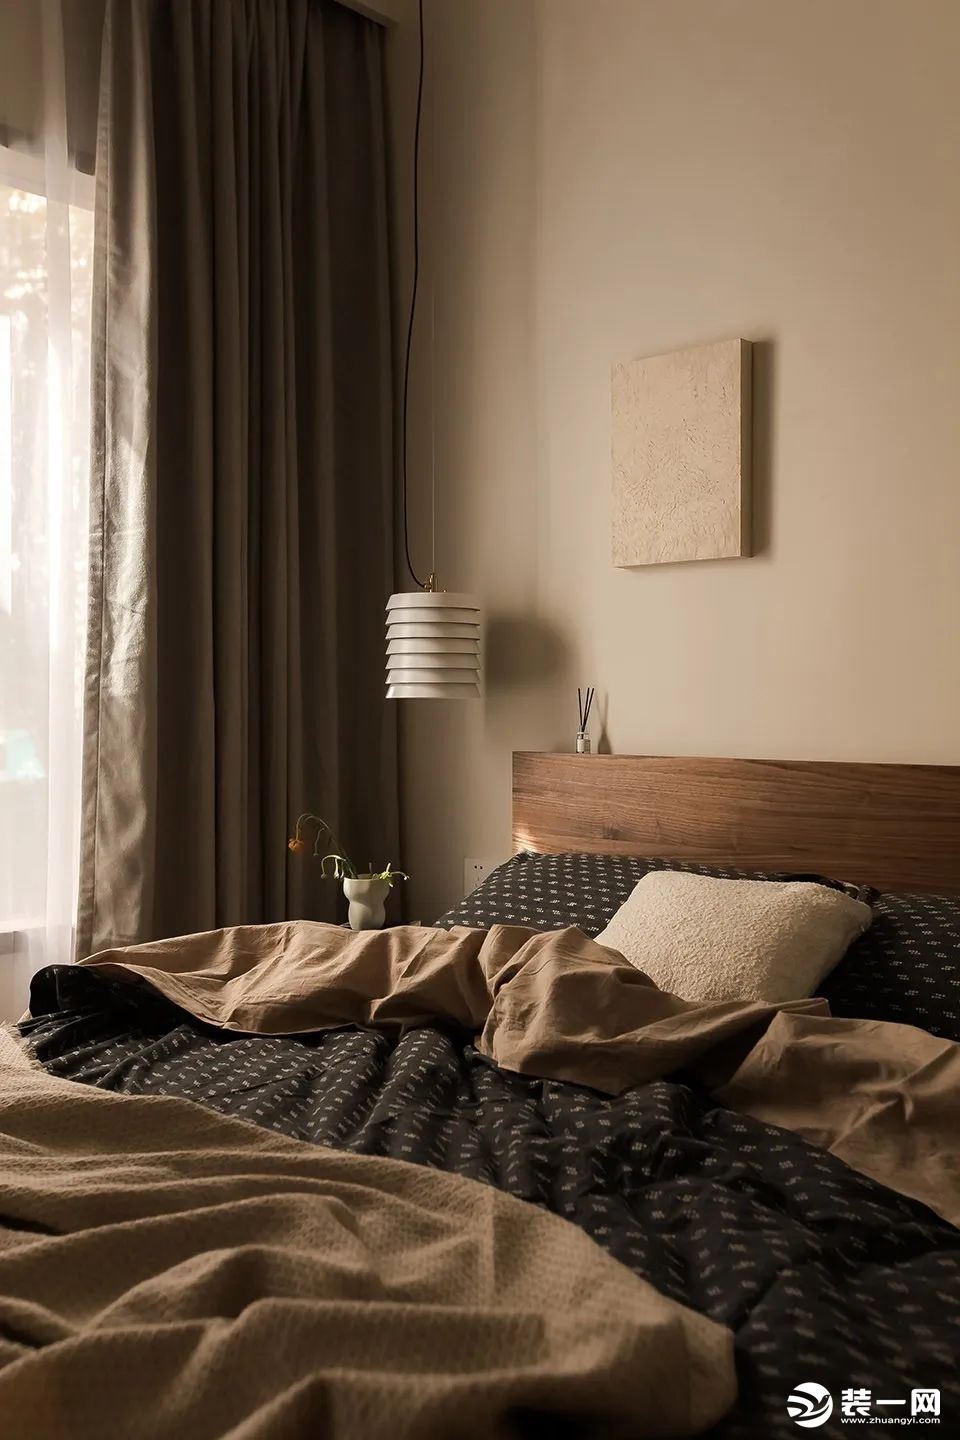 客房靠近客卫一侧，保证了卧室使用的便捷性，为提升客卫空间使用效率和体验。